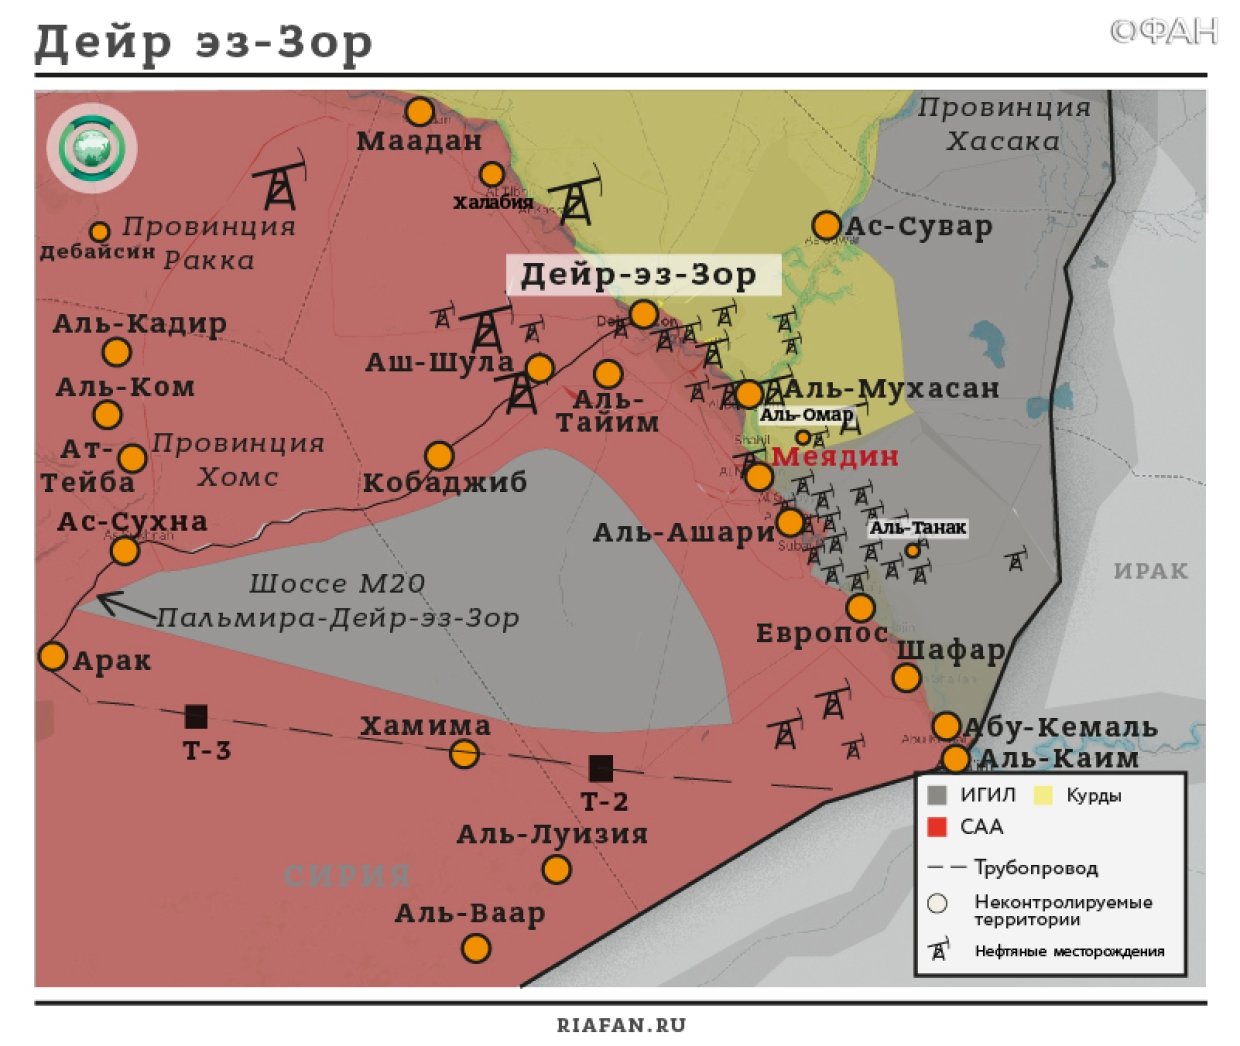 Сирия новости 17 мая 07.00: курды помогают ИГ переправляться через Евфрат на территорию САА; США продолжают подготовку боевиков в Ат-Танфе